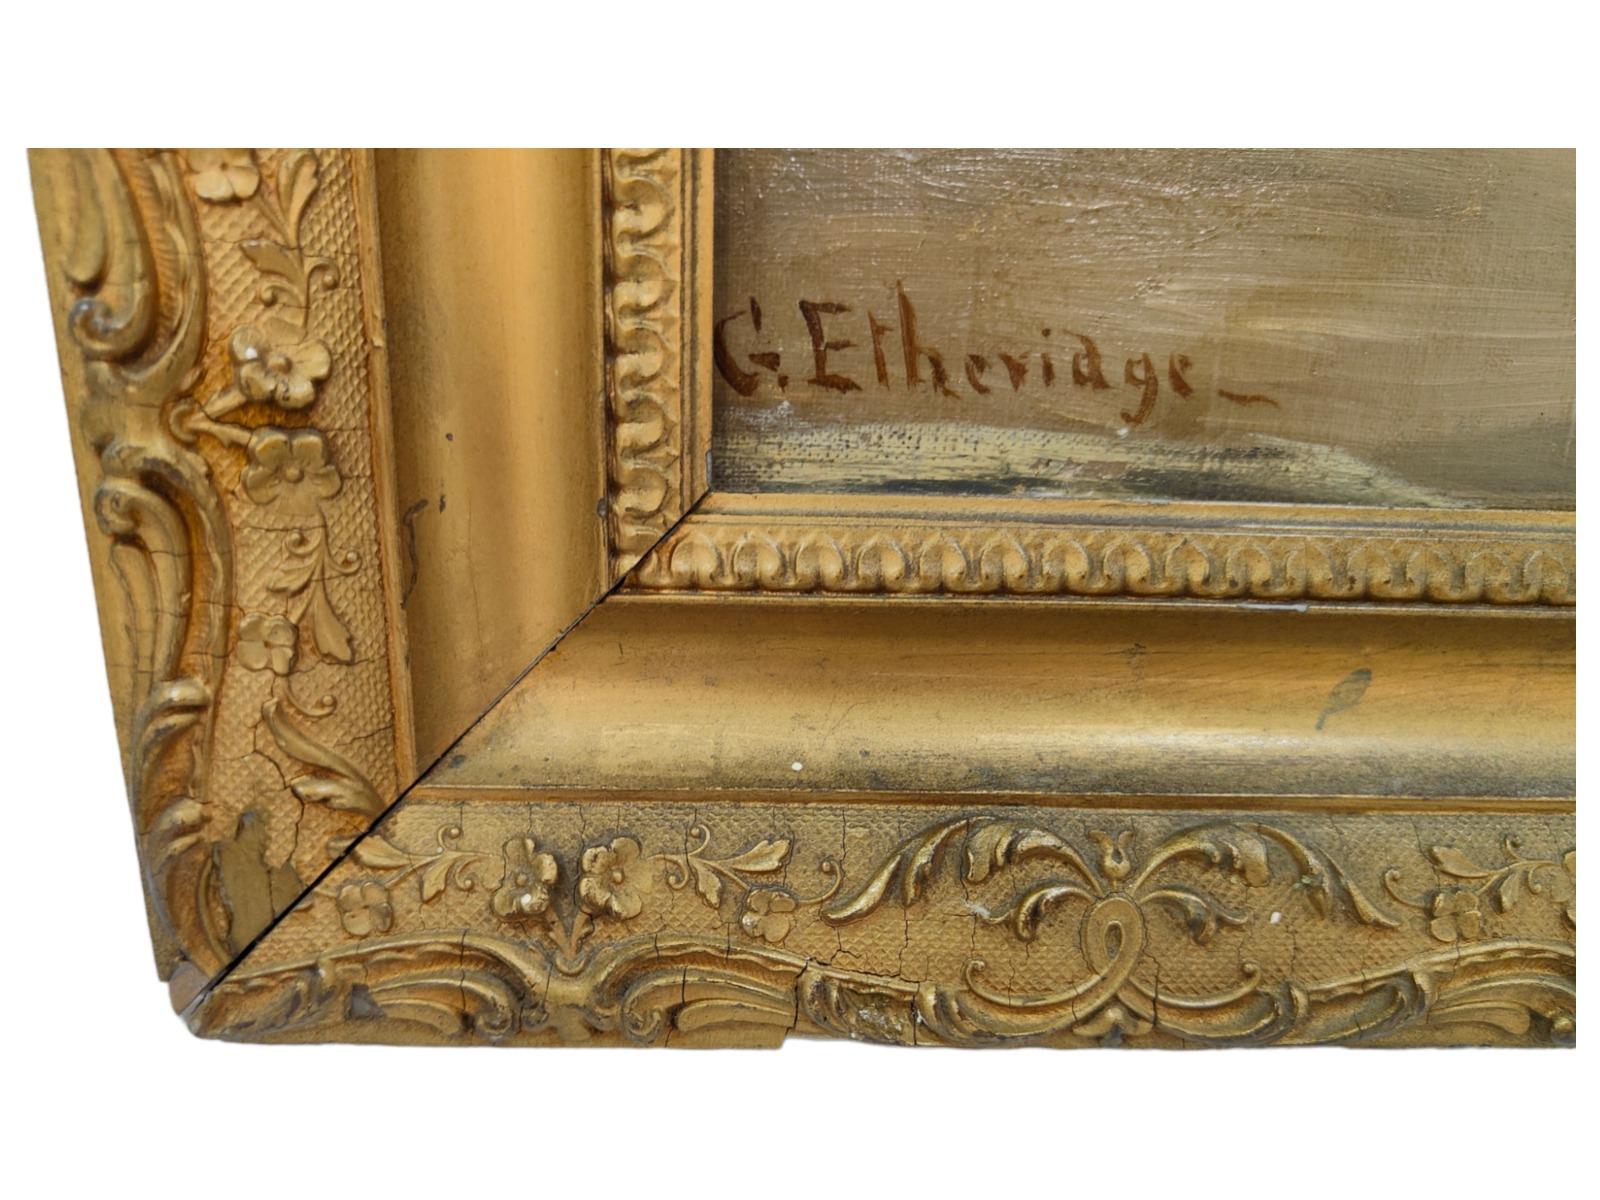 George Etheridge, huile sur toile.
C'est une huile sur toile de l'artiste : George Etheridge. Une de ses œuvres est exposée à : Musée et galerie d'art du château de Cyfarthfa.
Mesures totales : 74x63 cm.